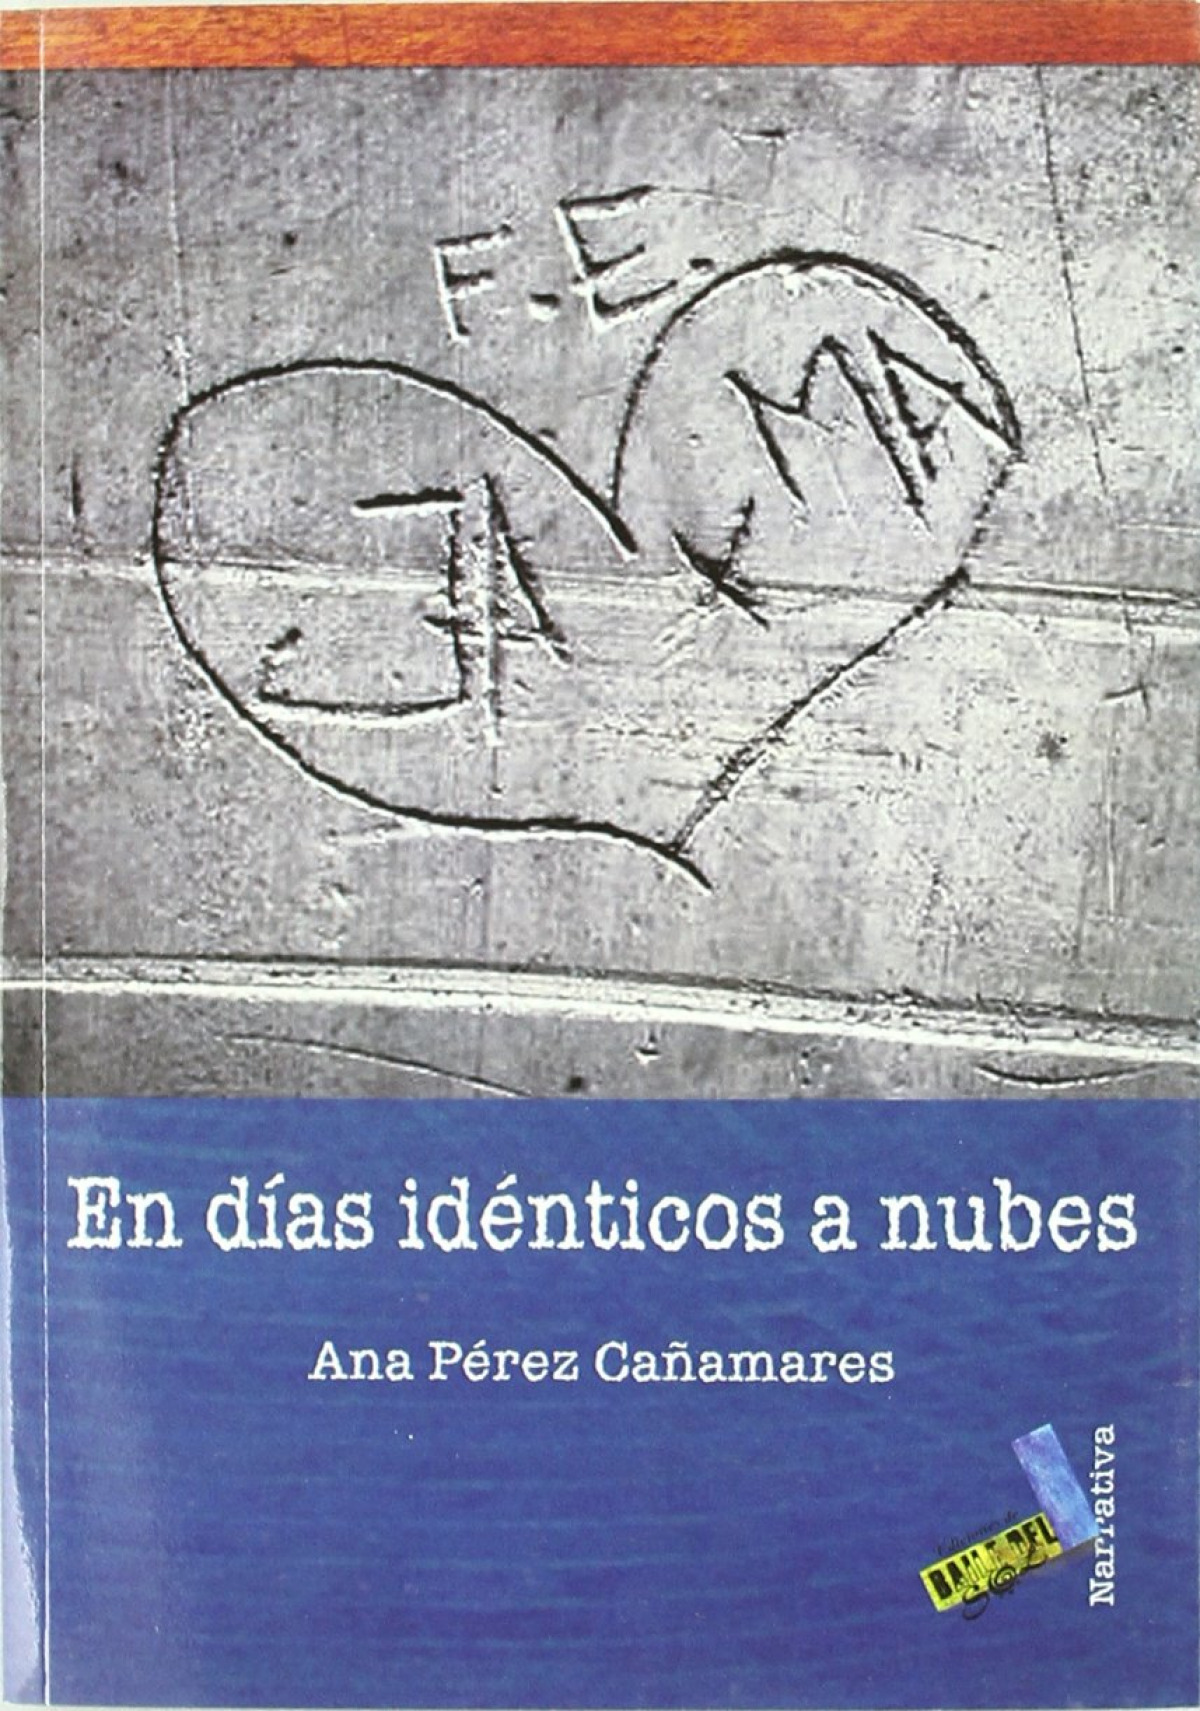 En dias identicos a nubes - Ana Pérez Cañamares